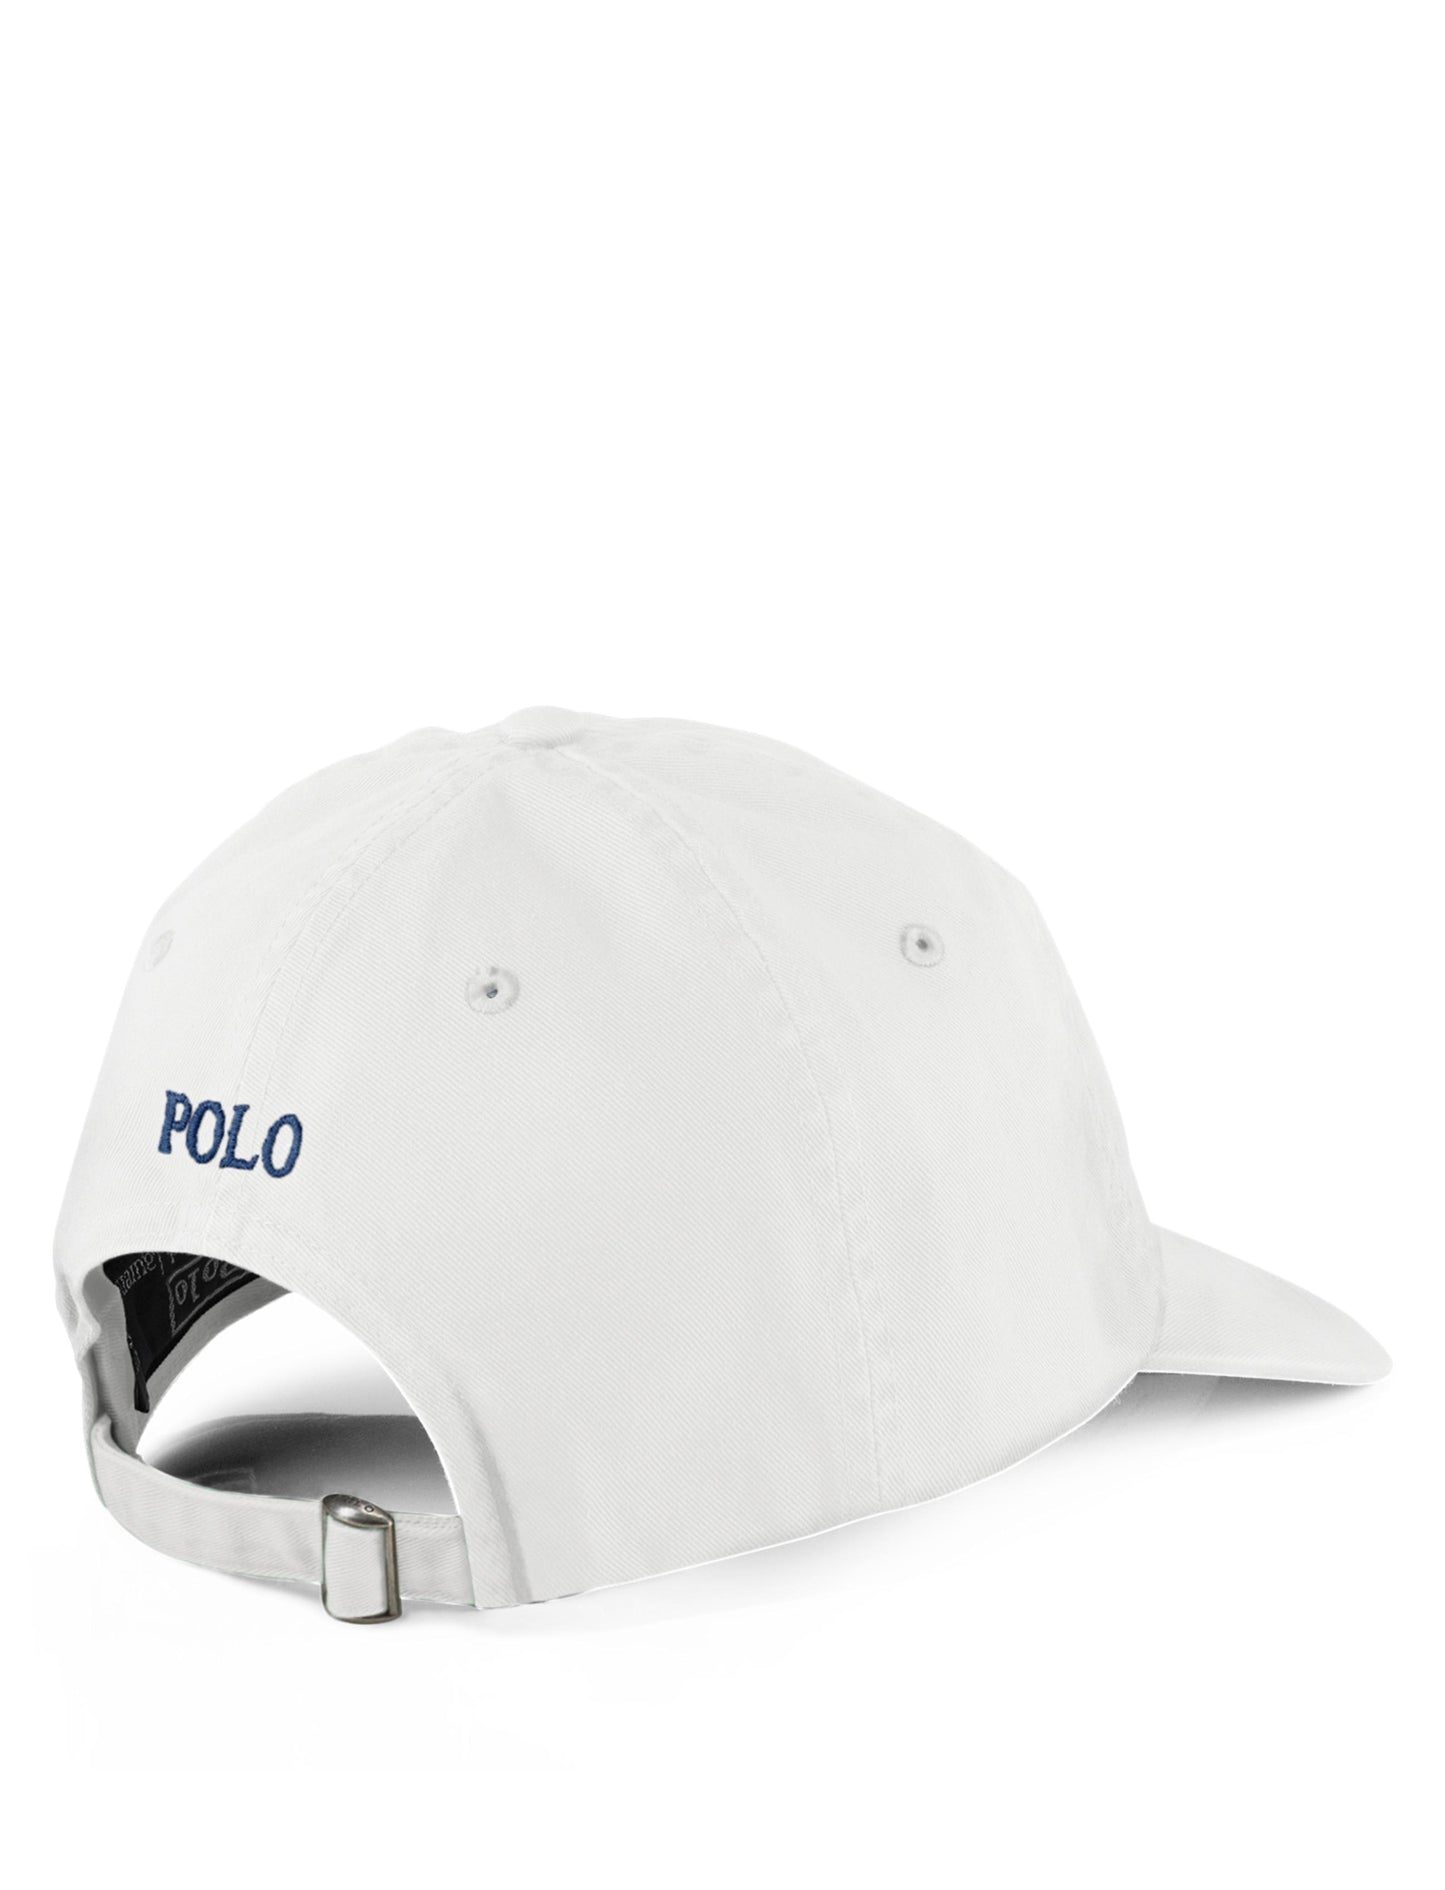 Polo Ralph Lauren Chino Baseball Cap White